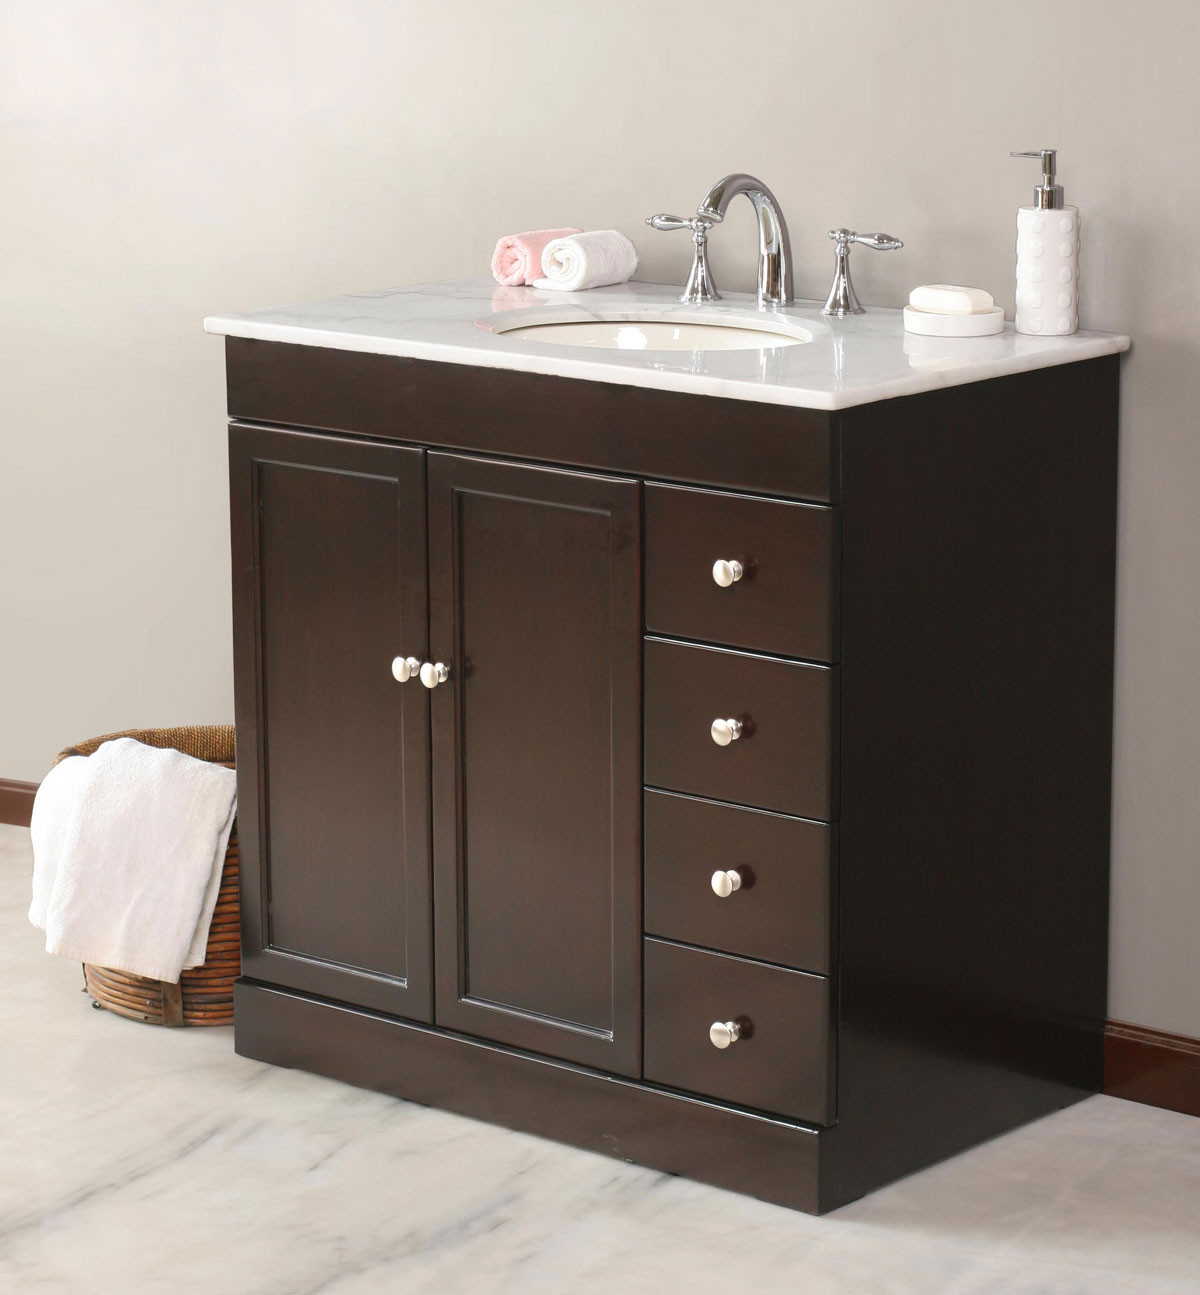 Bathroom Vanities With Granite Tops
 Bathroom Vanities with Tops Choosing the Right Countertop